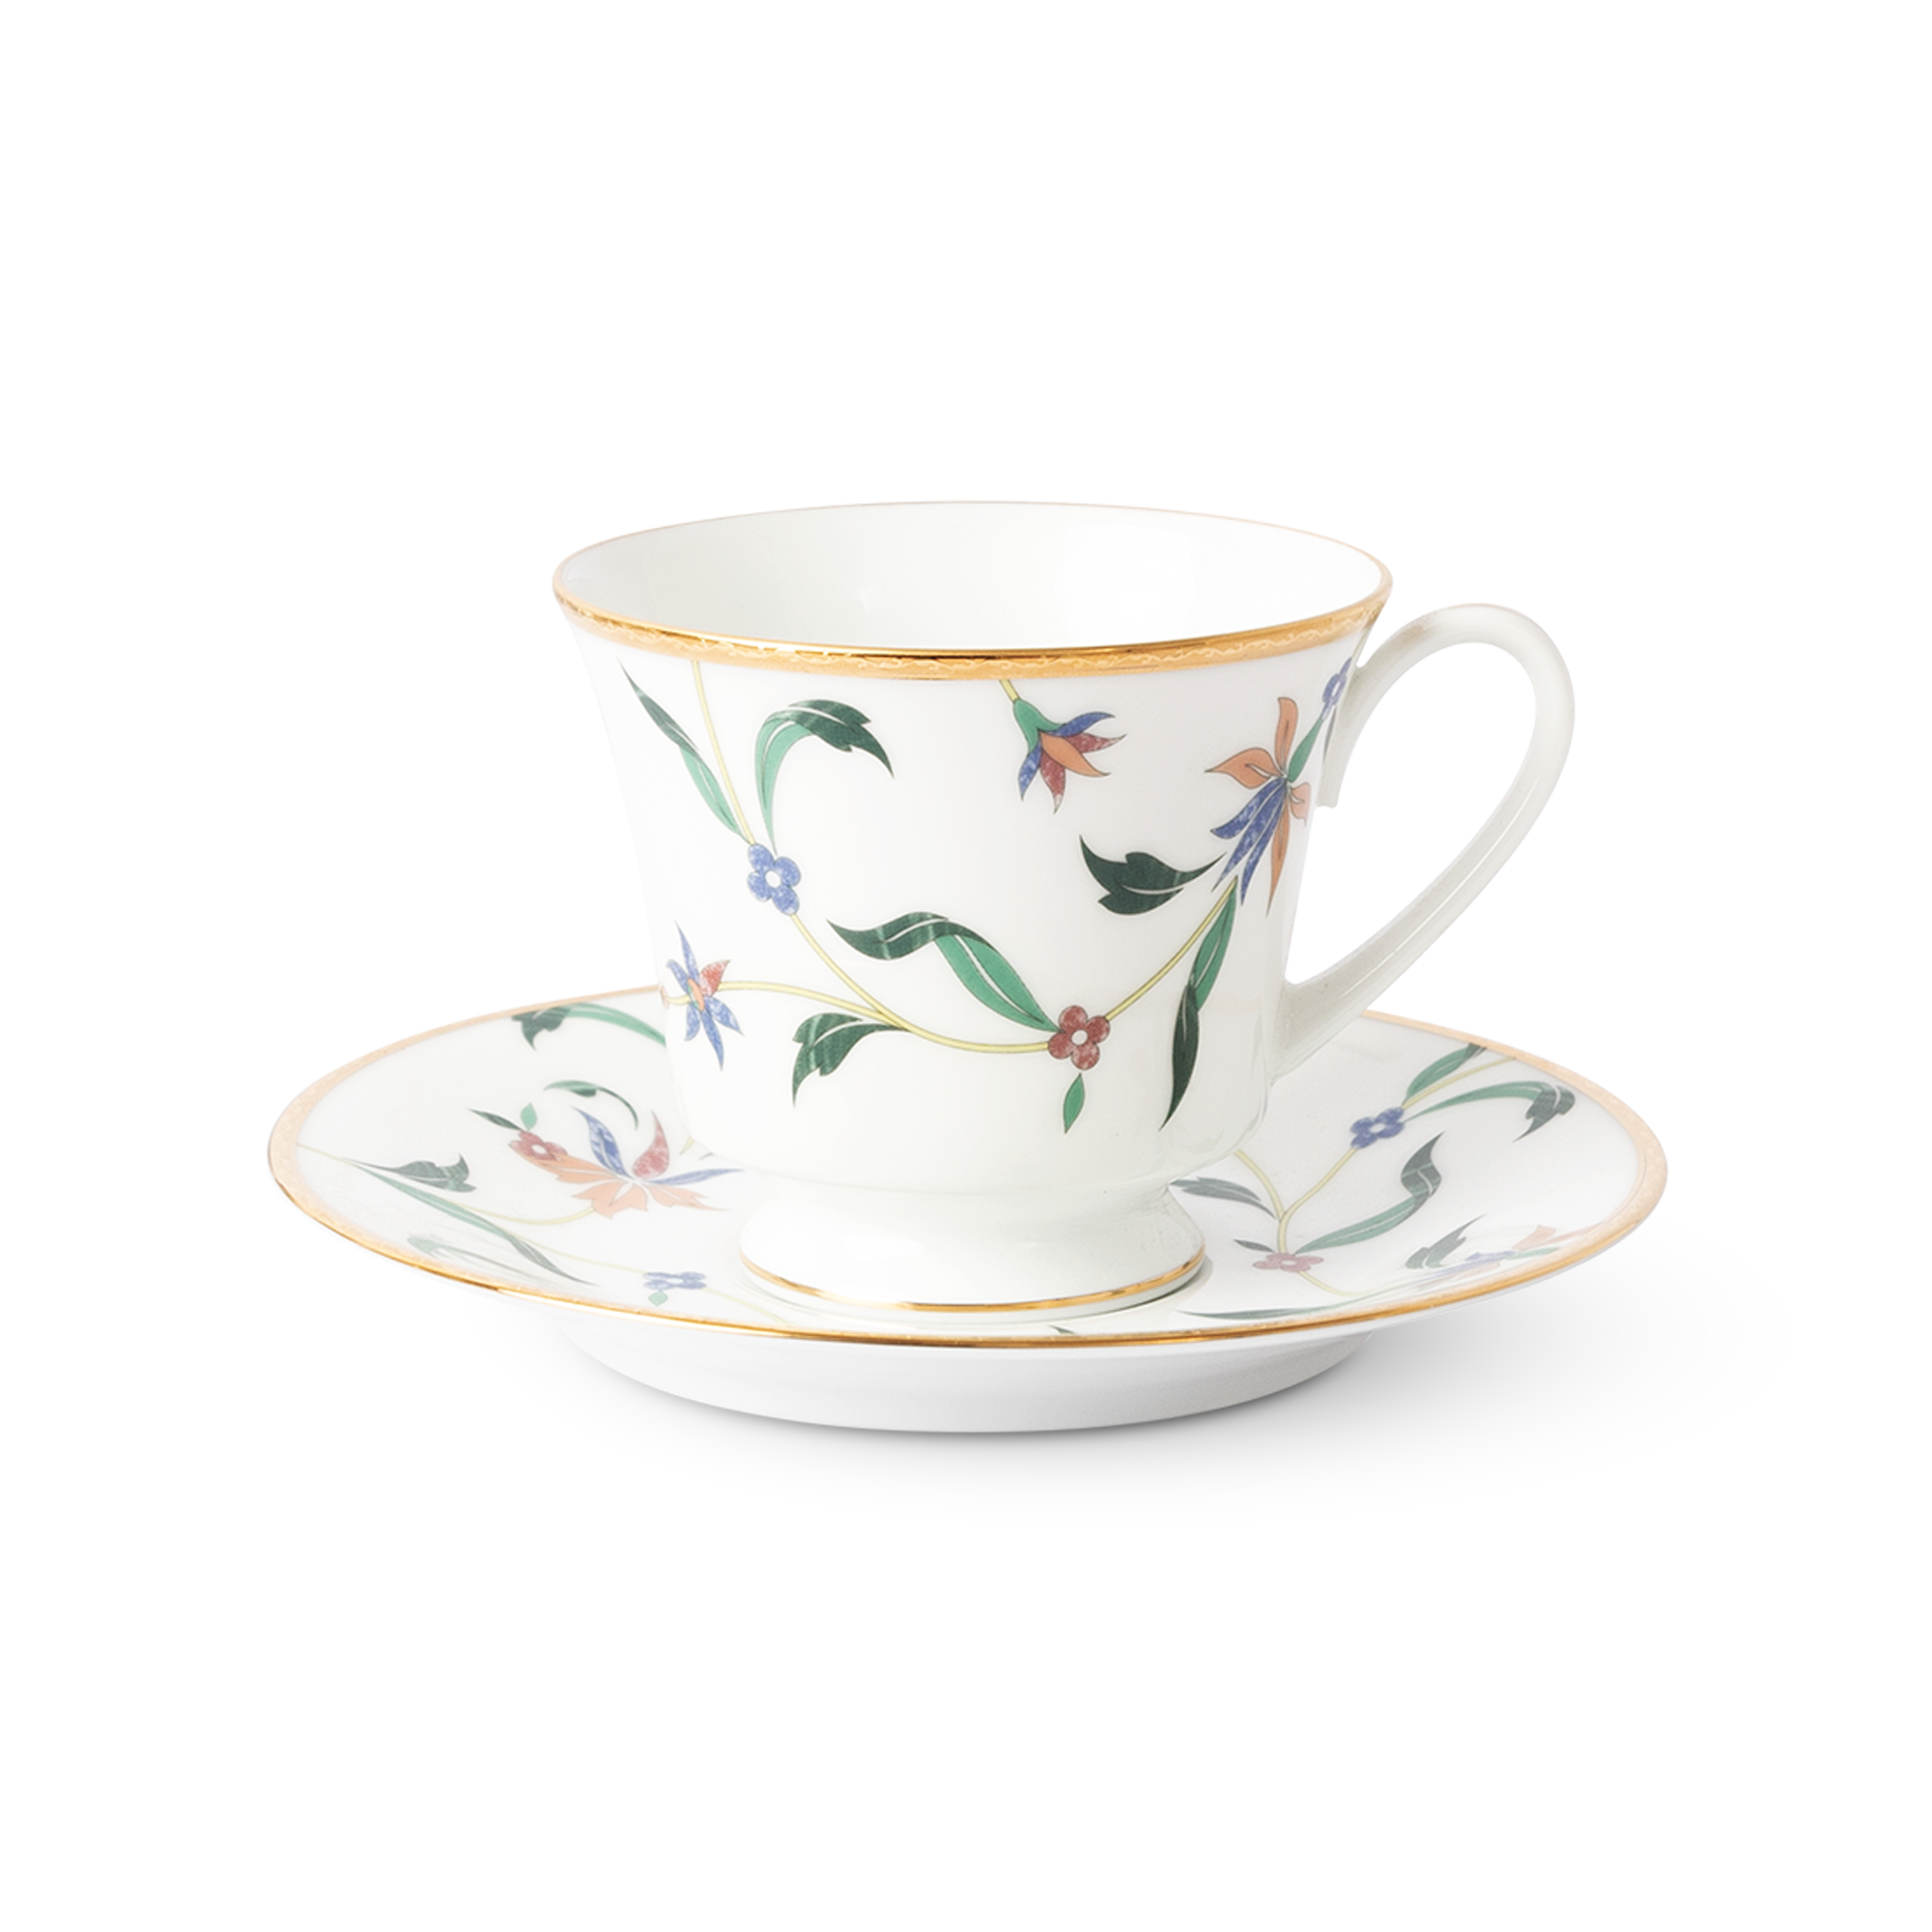  Chén trà (tách trà) kèm đĩa lót dung tích 220ml sứ trắng | Bountiful Garden M-667L-T91189 